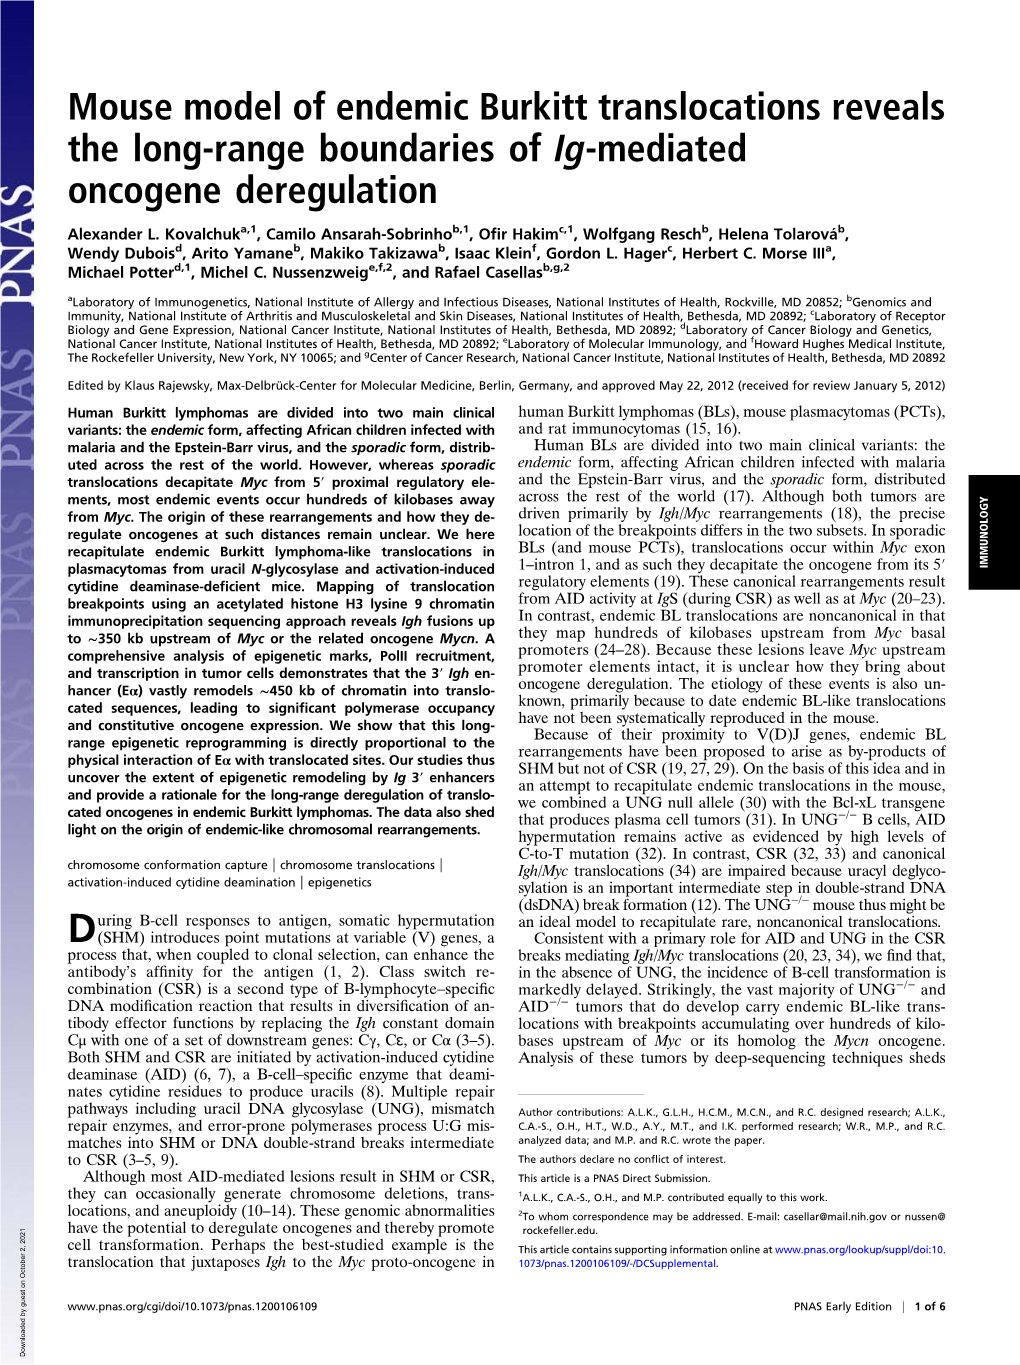 Mouse Model of Endemic Burkitt Translocations Reveals the Long-Range Boundaries of Ig-Mediated Oncogene Deregulation